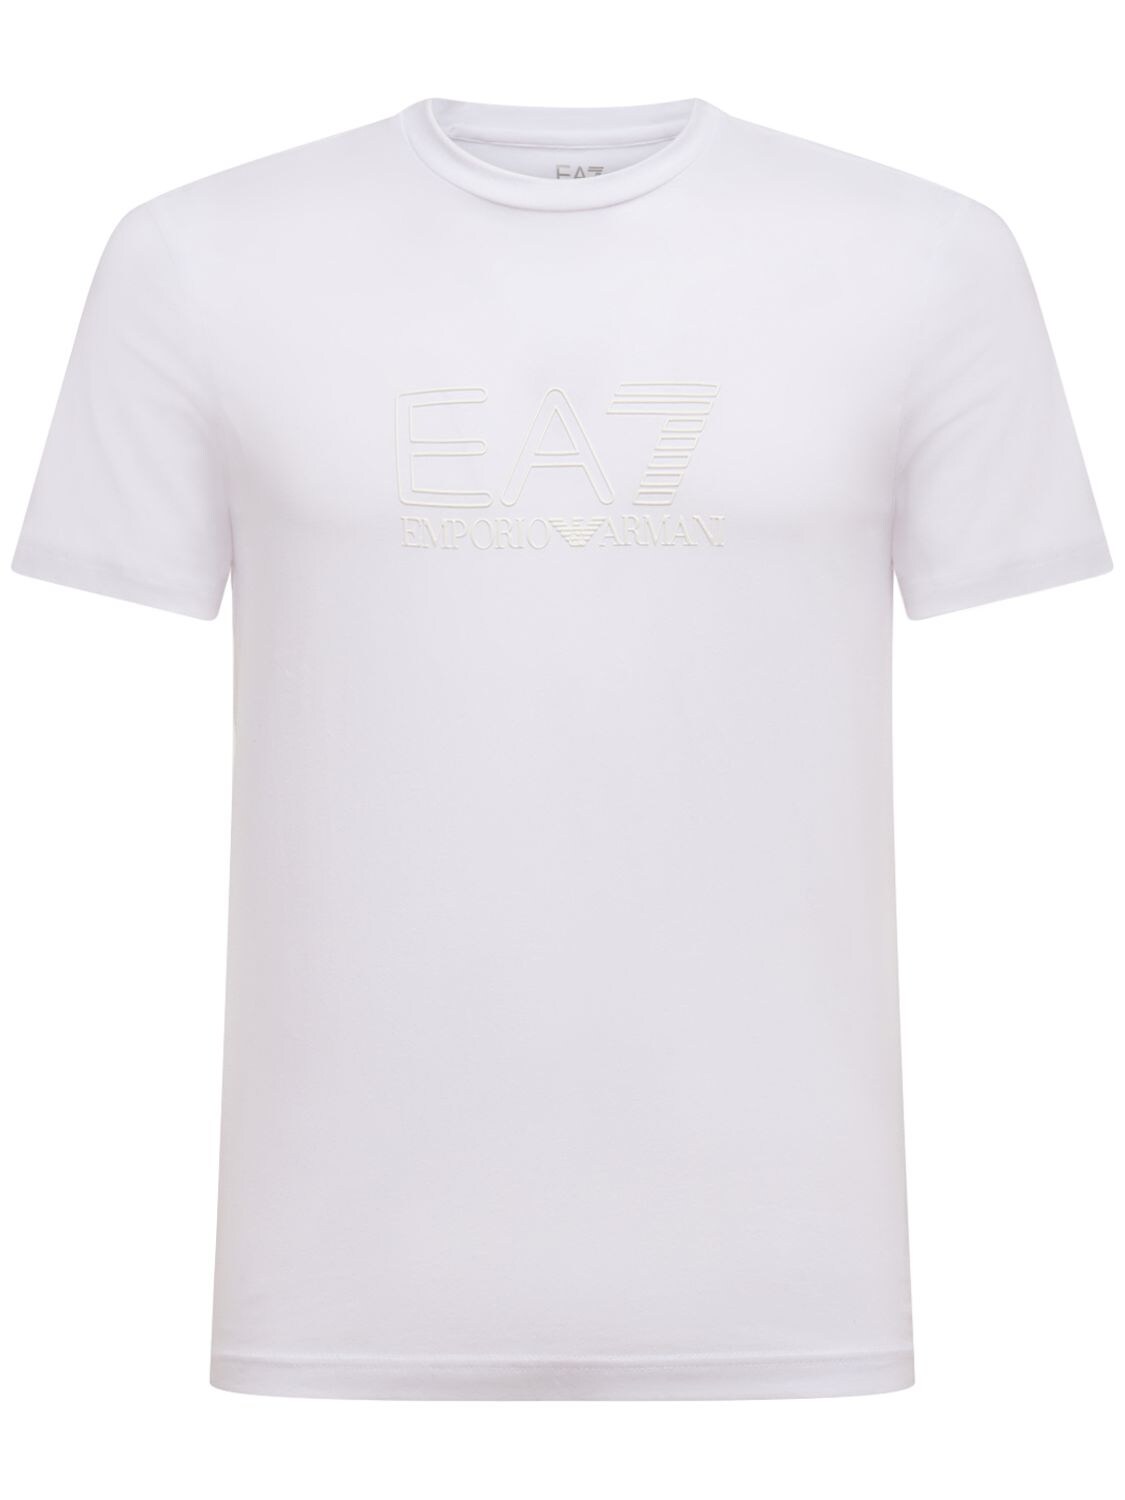 T-shirt Visibility In Cotone Stretch - EA7 EMPORIO ARMANI - Modalova